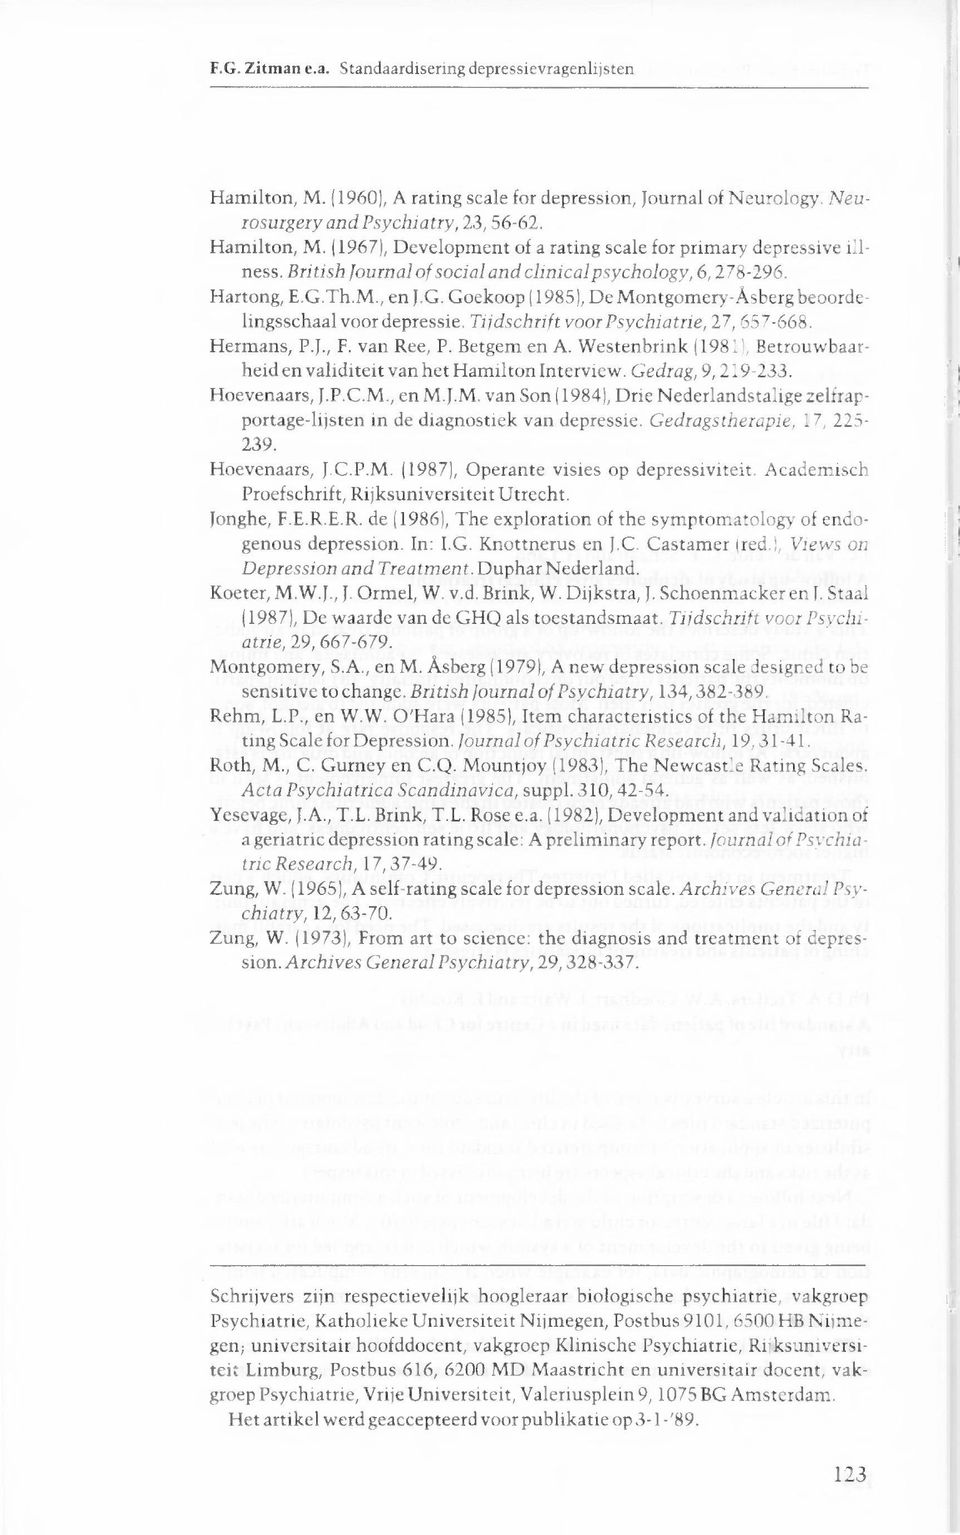 Tijdschrift voor Psychiatrie, 27, 657-668. Hermans, P.J., F. van Ree, P. Betgem en A. Westenbrink (1981), Betrouwbaarheid en validiteit van het Hamilton Interview. Gedrag, 9, 219-233. Hoevenaars, J.P.C.